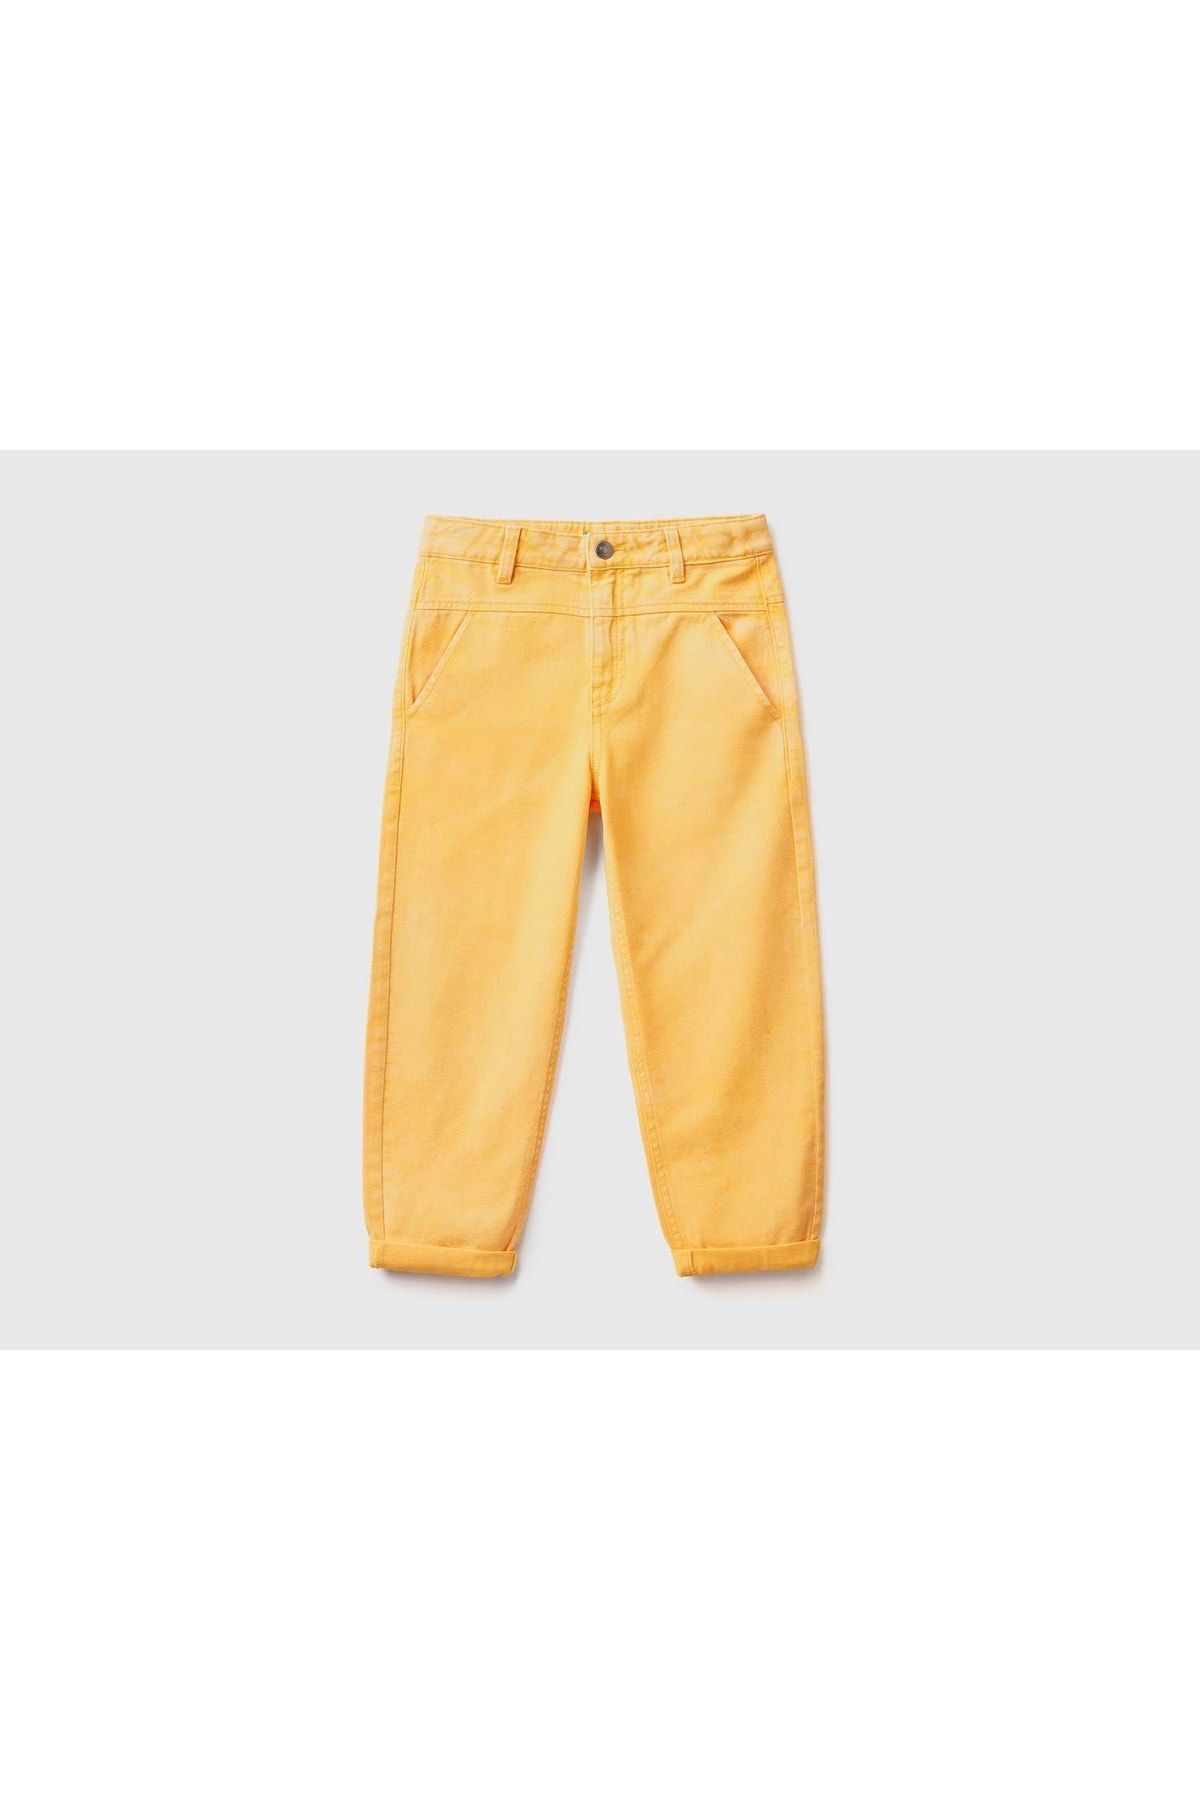 United Colors of Benetton Erkek Çocuk-hardal Sarı-denim Pantolon